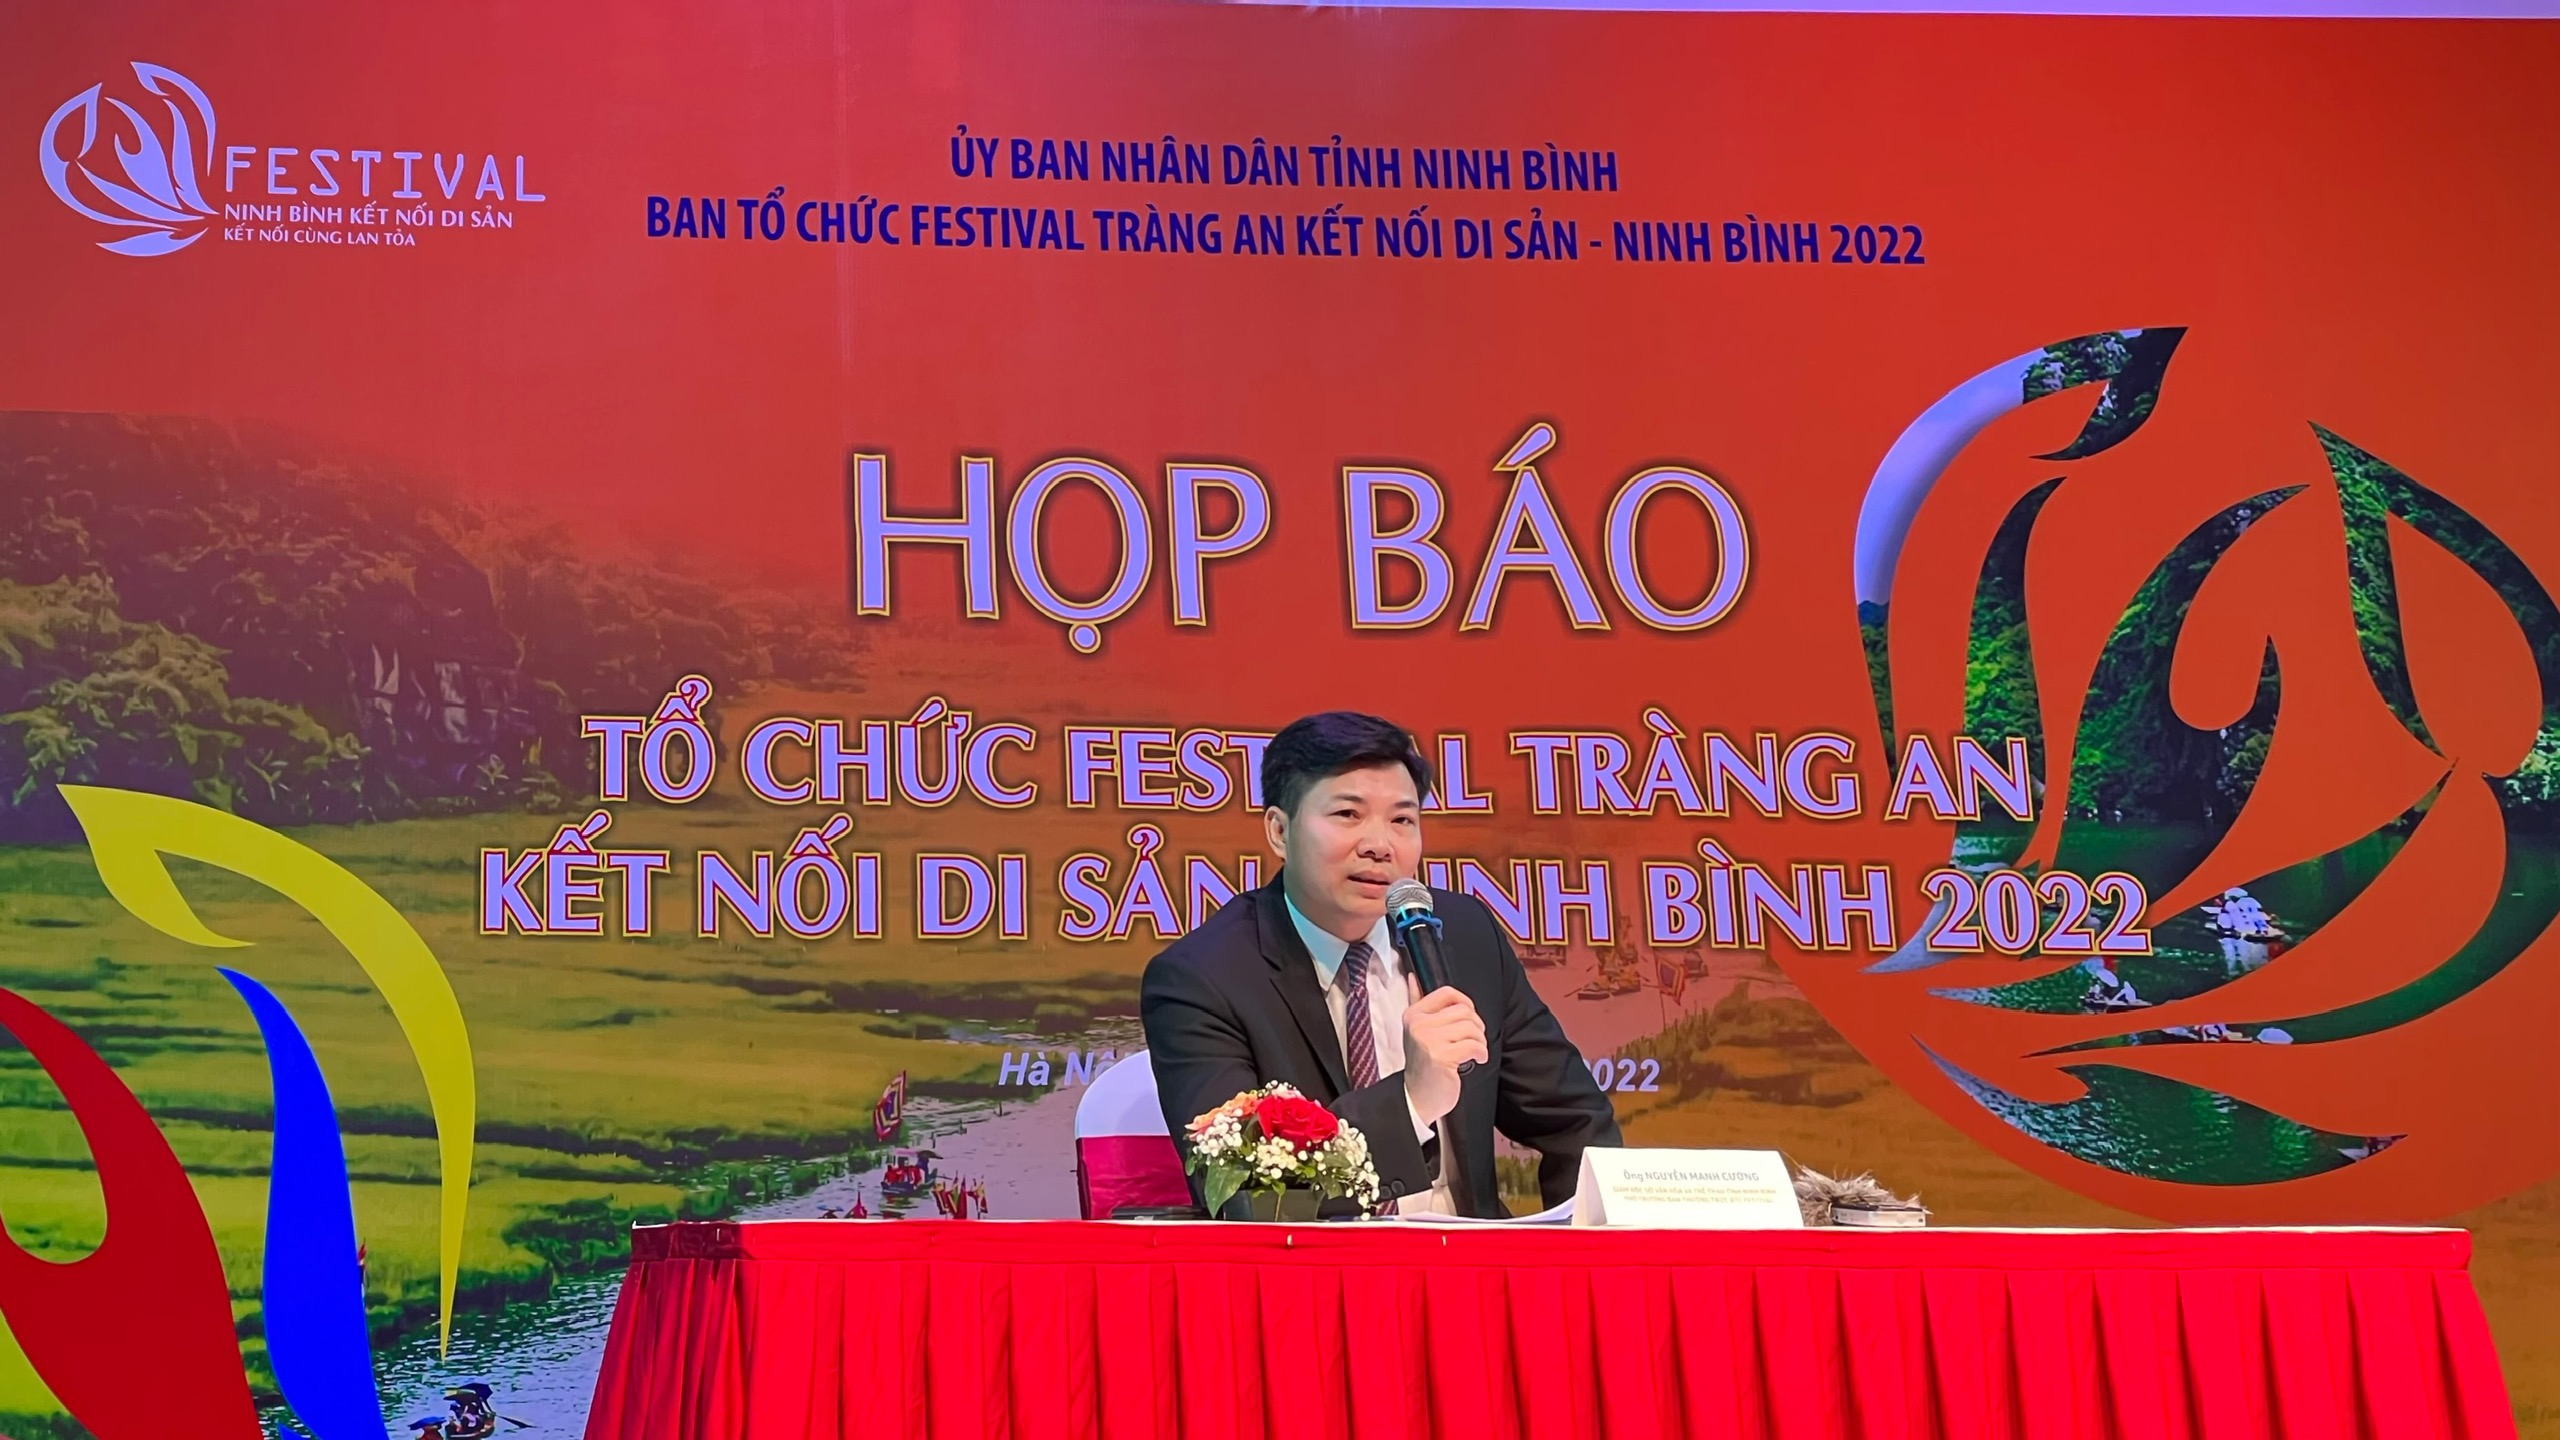 Giám đốc Sở Văn hóa và Thể thao tỉnh Ninh Bình Nguyễn Mạnh Cường: Ninh Bình sẽ xây dựng Festival làm điểm nhấn cho du lịch mùa thấp điểm